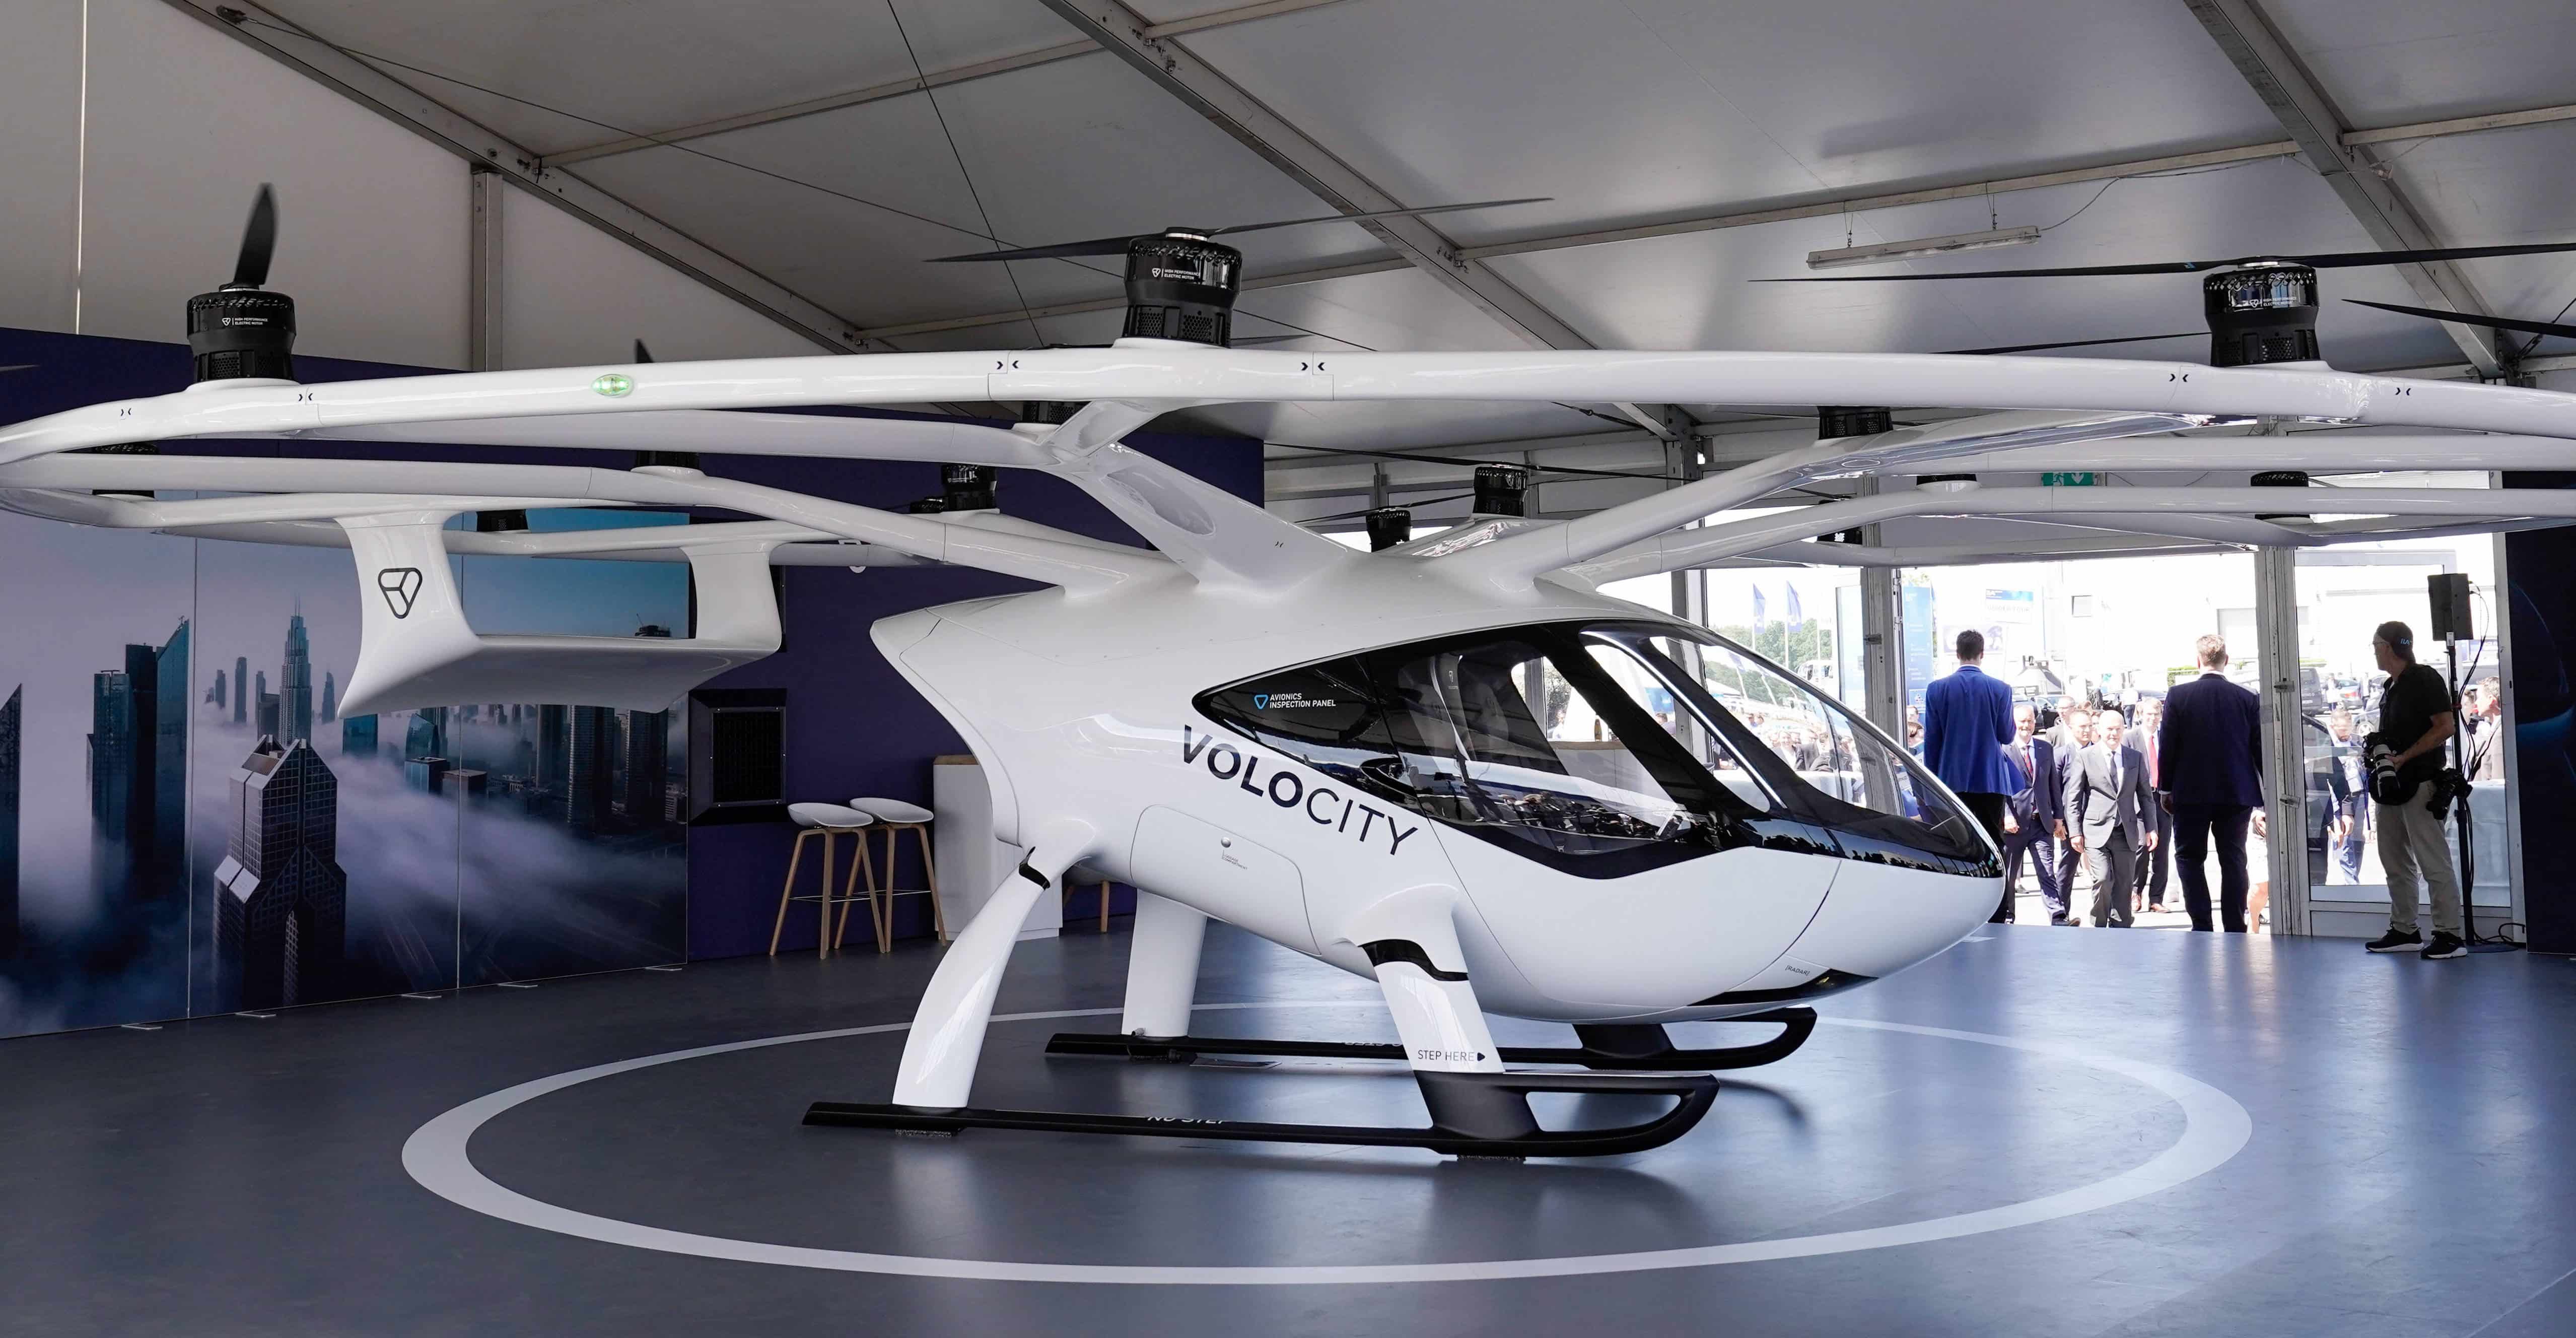 Flugtaxis: Volocopter startet Produktion